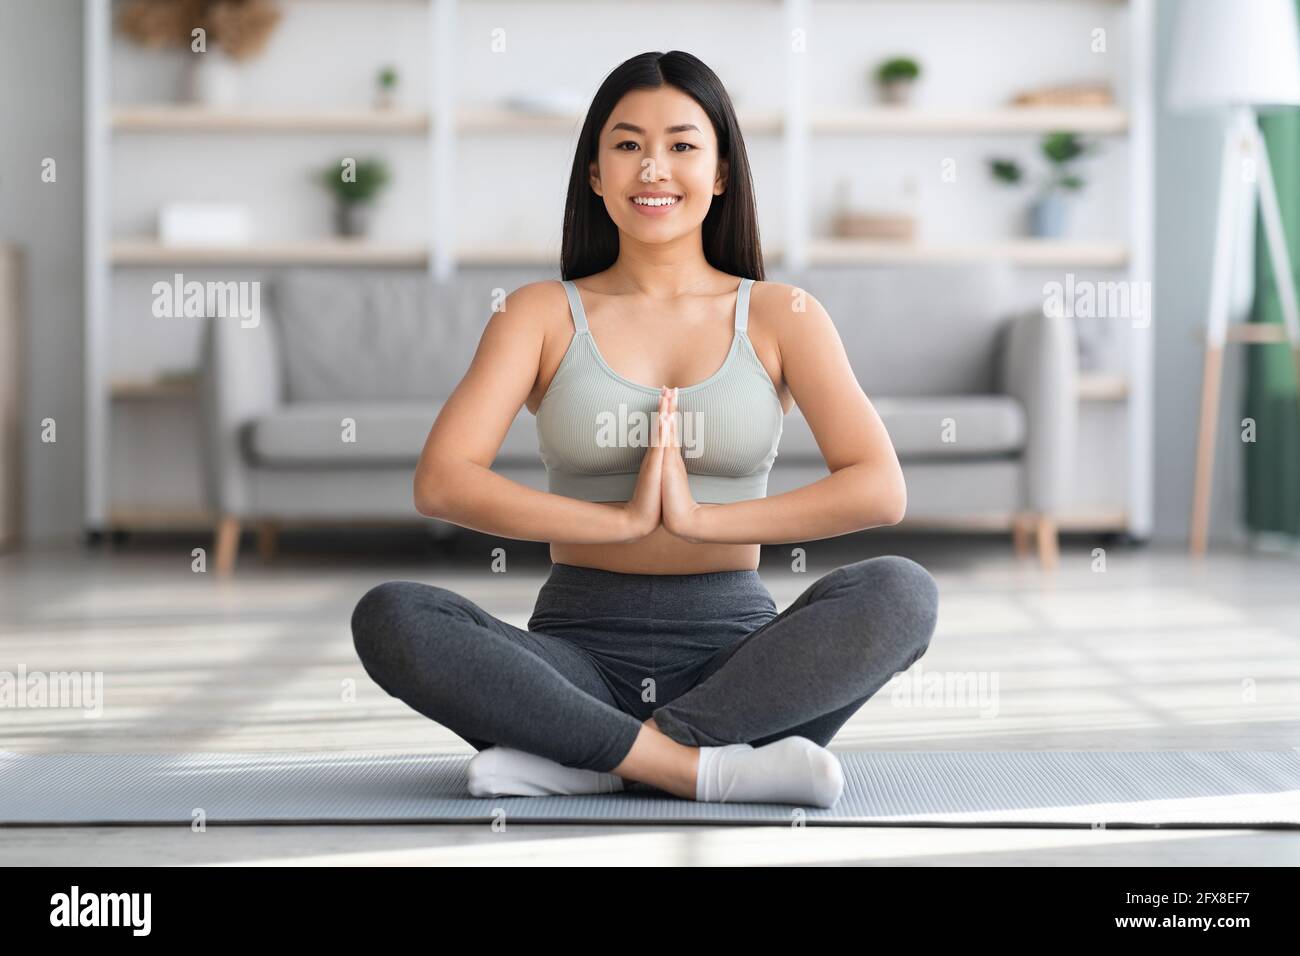 Immagini Stock - Bella Donna Asiatica Di Relax E La Meditazione